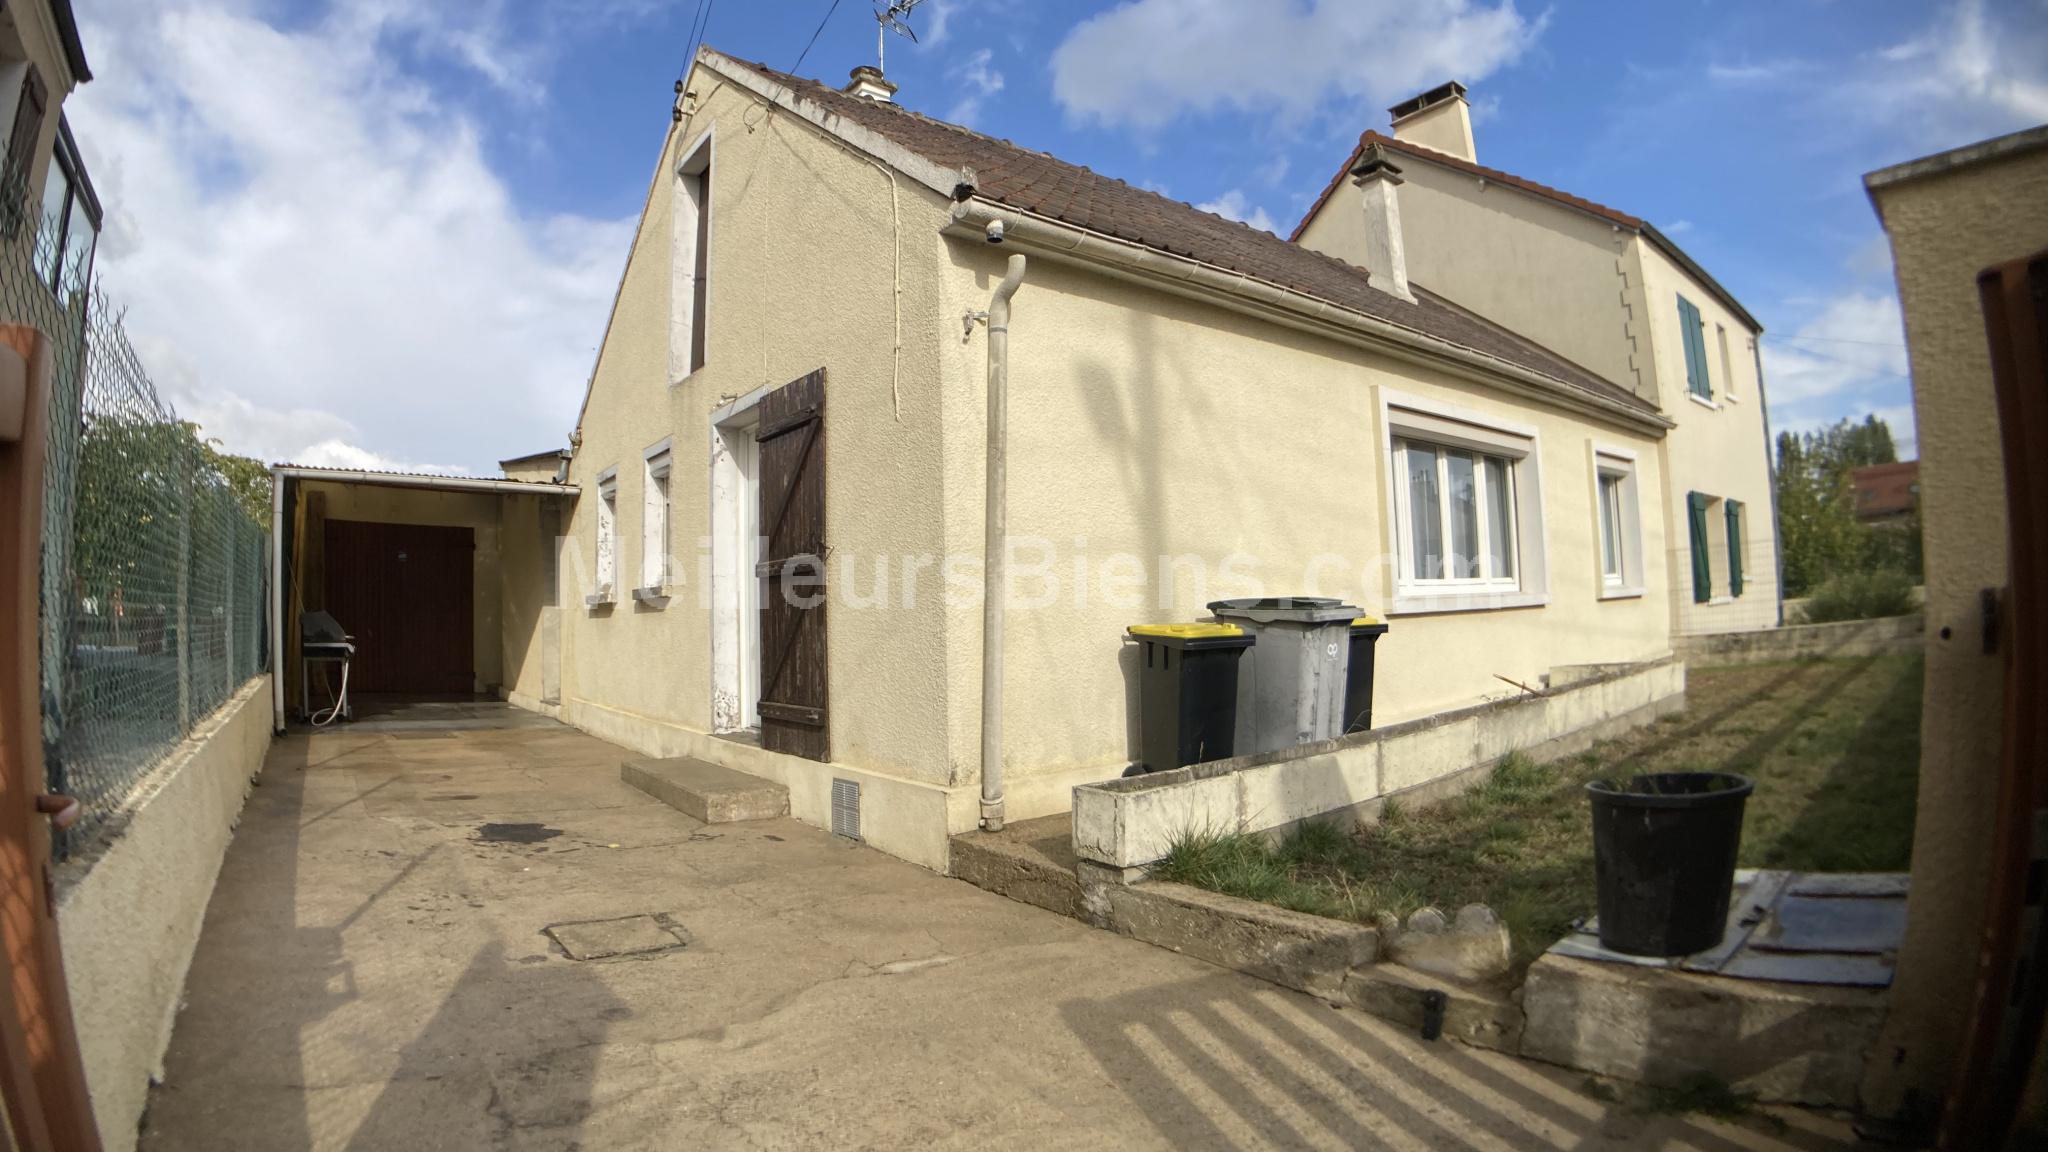 vente Maison plainpied à Boran sur Oise, 3 chambres , Terrasse, Jardin